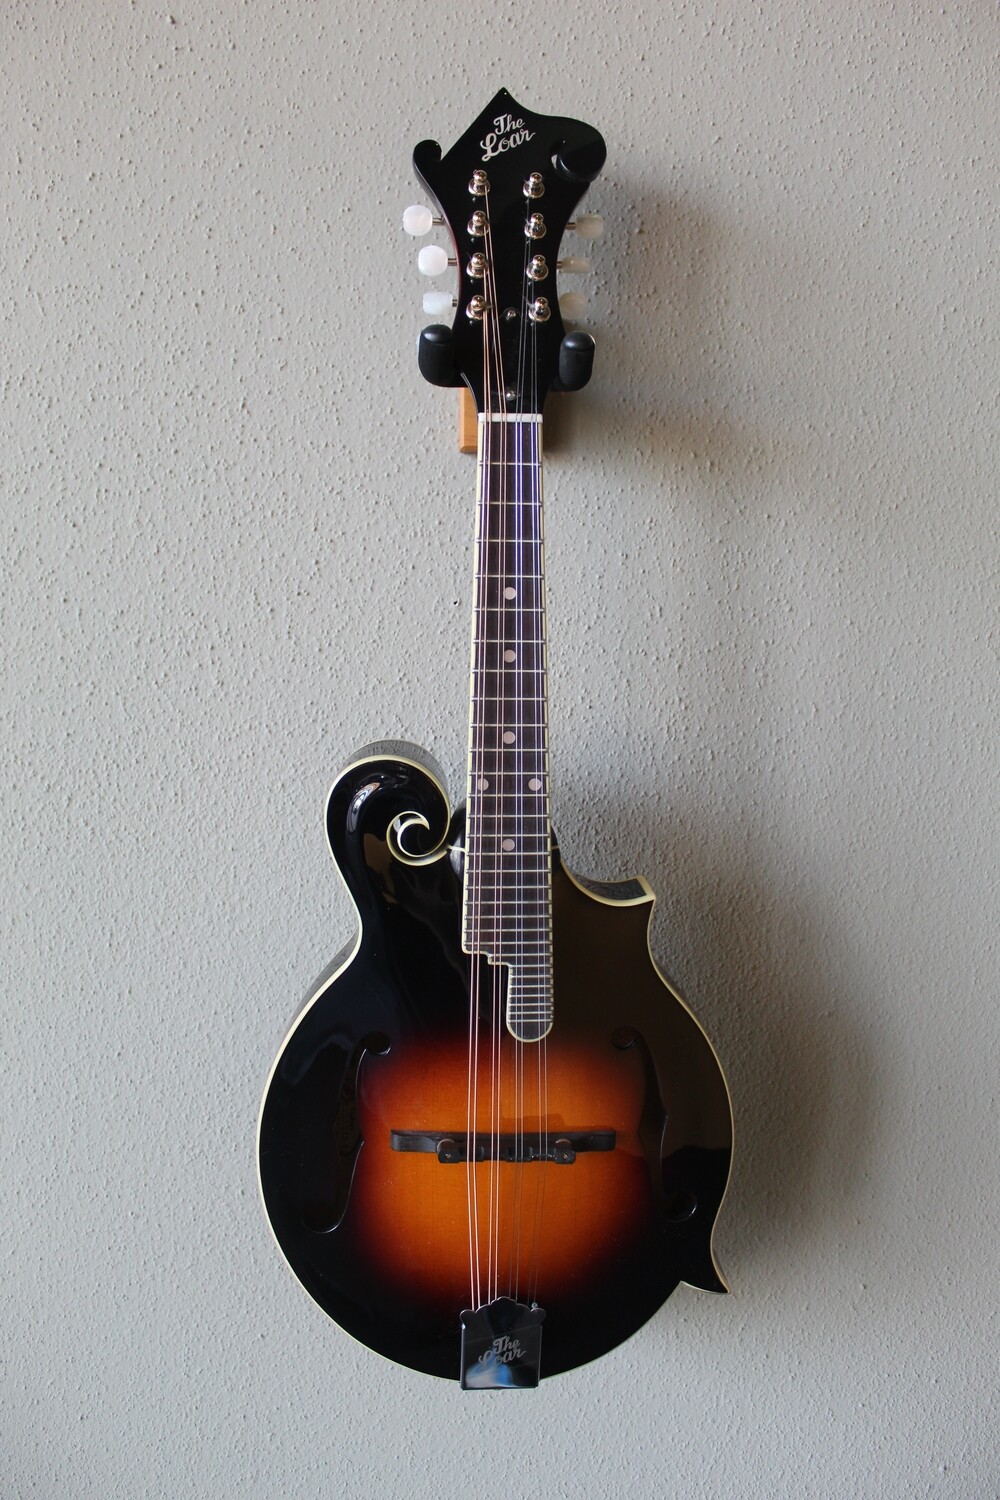 The Loar LM-520 Hand Carved F-Style Performer Mandolin with Gig Bag - Vintage Sunburst